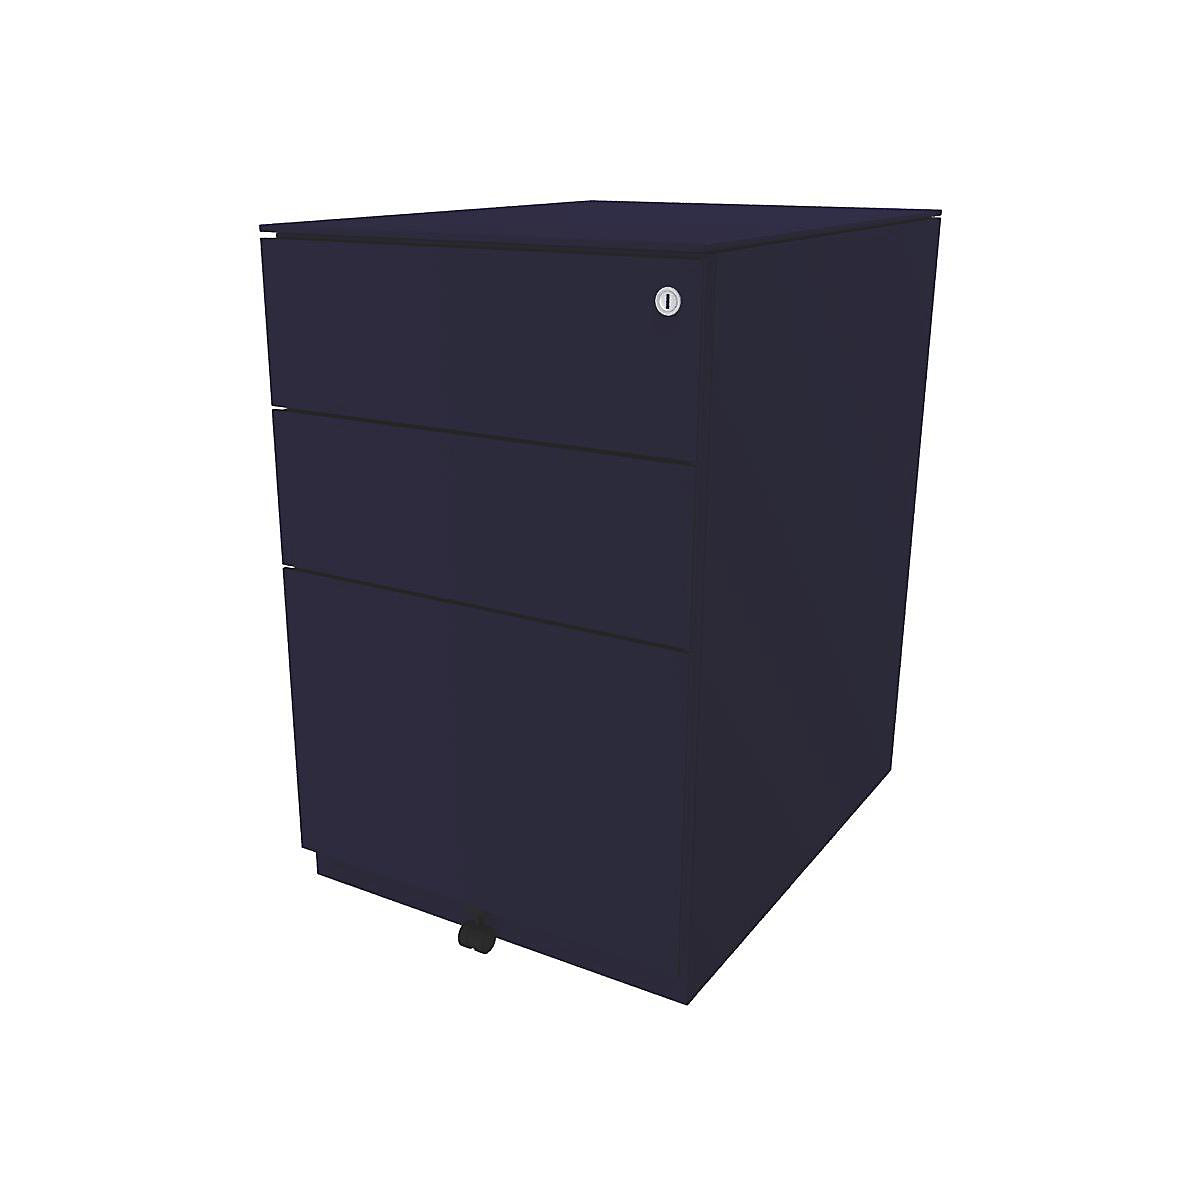 Pojazdný kontajner Note™, s 2 univerzálnymi zásuvkami, 1 závesná registratúra – BISLEY, v x š x h 652 x 420 x 565 mm, s hornou doskou, oxfordská modrá-12